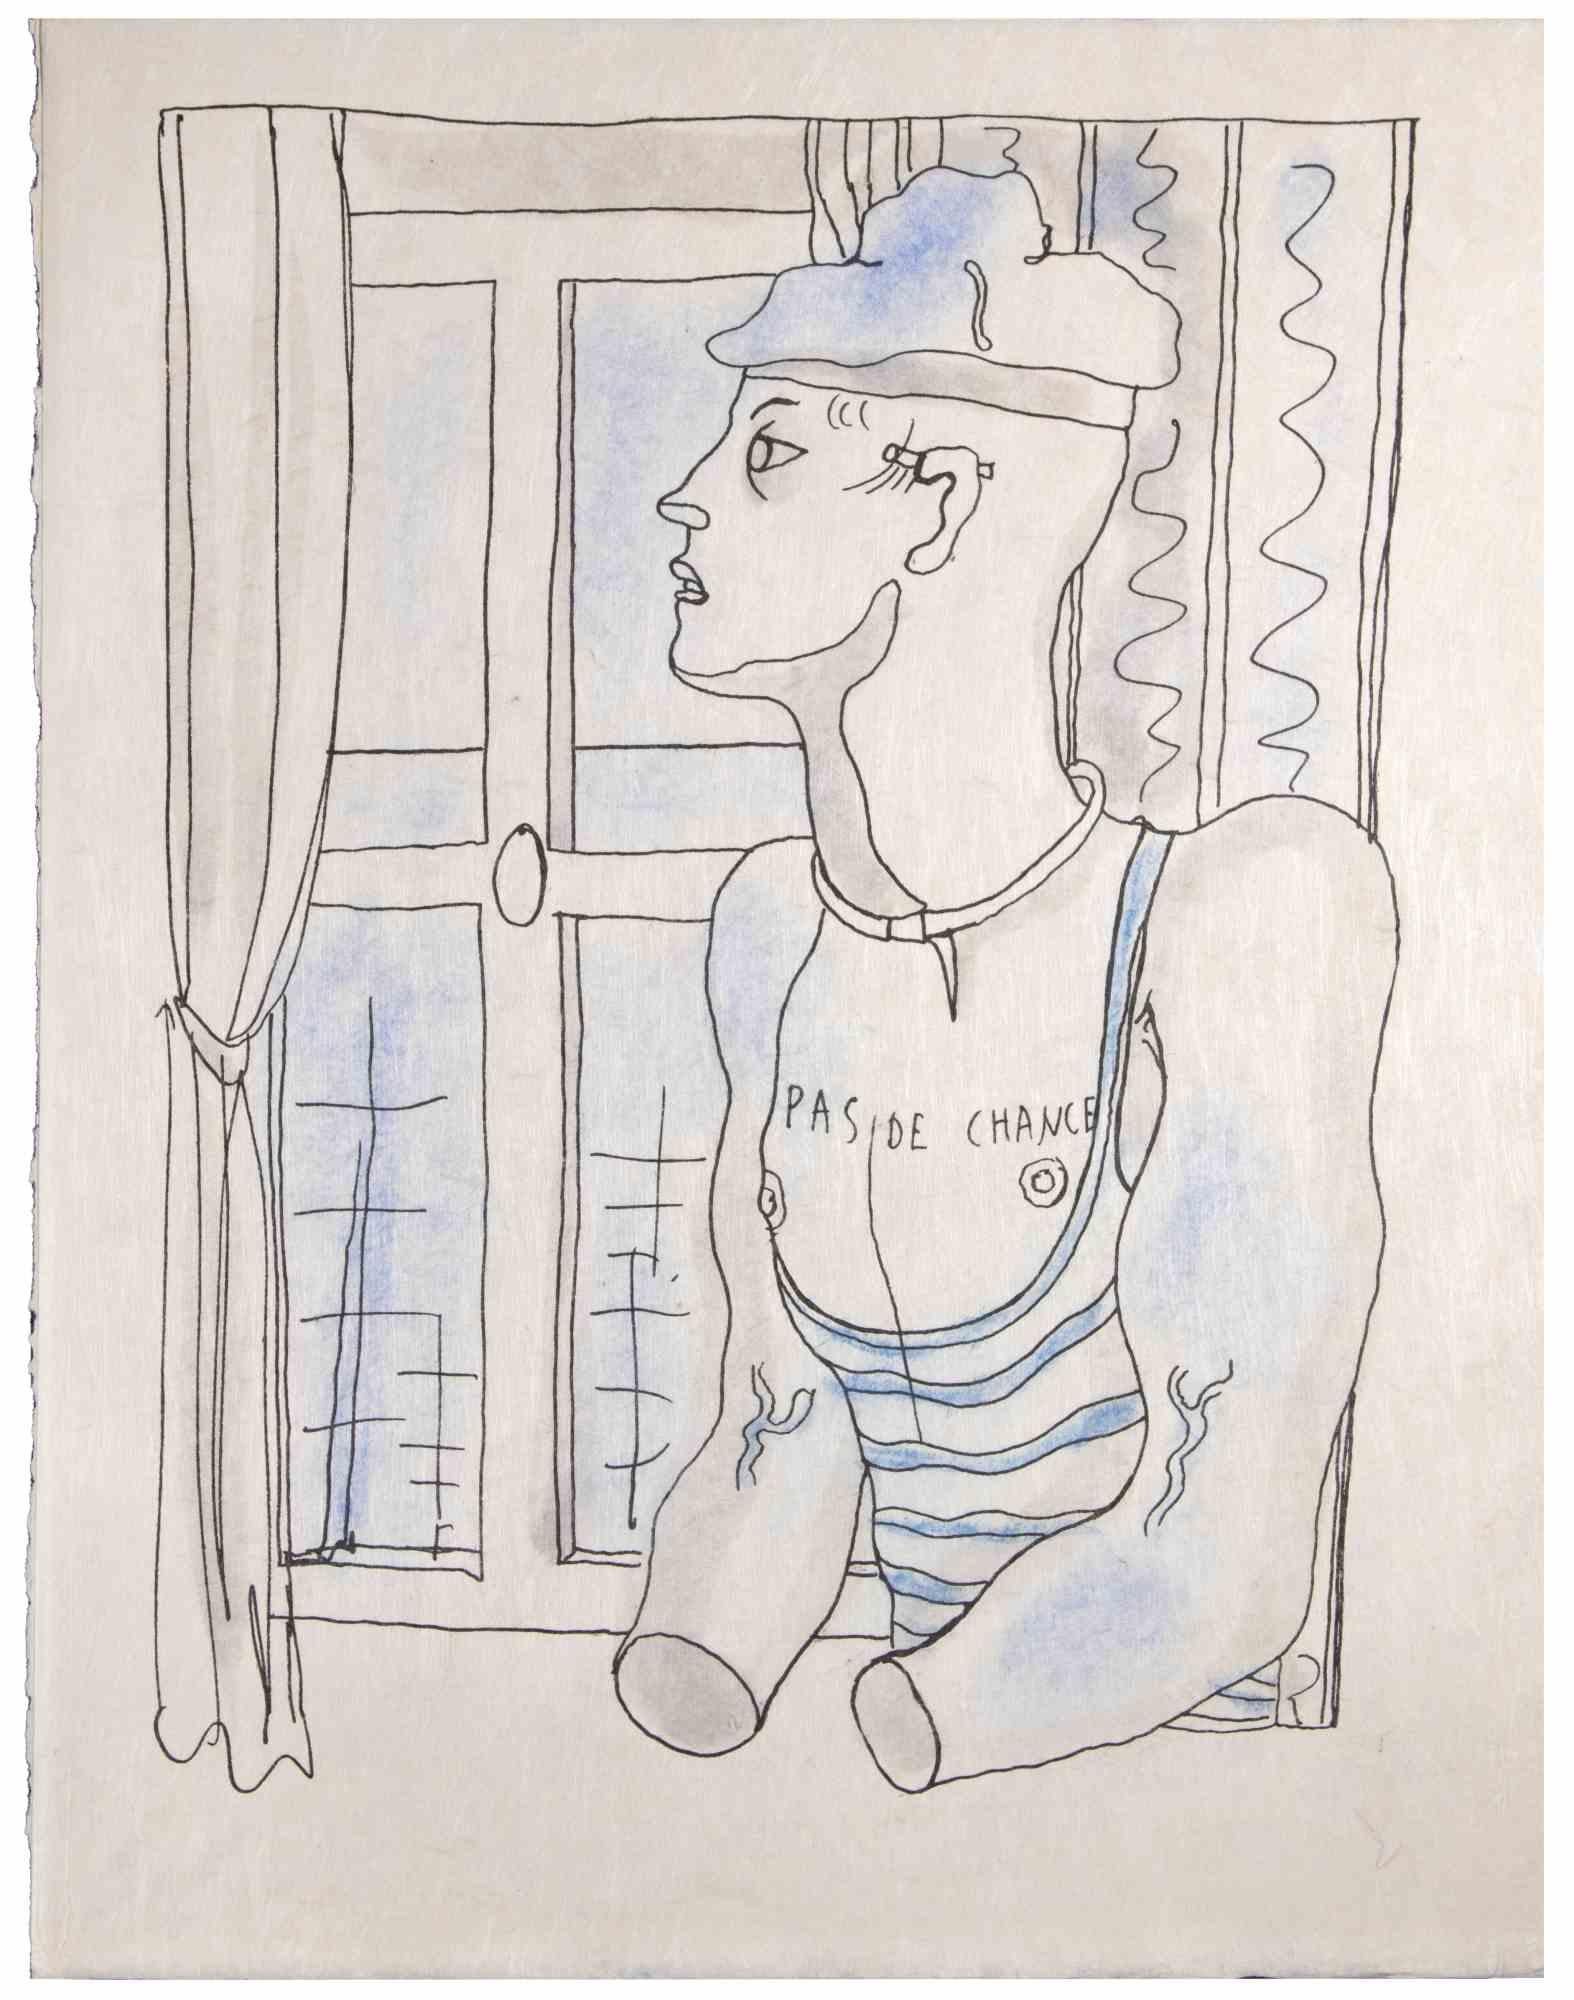 Hoffnungslos  ist eine kolorierte Lithographie auf Japanpapier von Jean Cocteau (1889 -1963) aus dem Jahr 1930. Französischer Zeichner, Dichter, Essayist, Dramatiker, Librettist, Filmregisseur.

Ausgezeichneter Zustand, keine Signatur.

Das